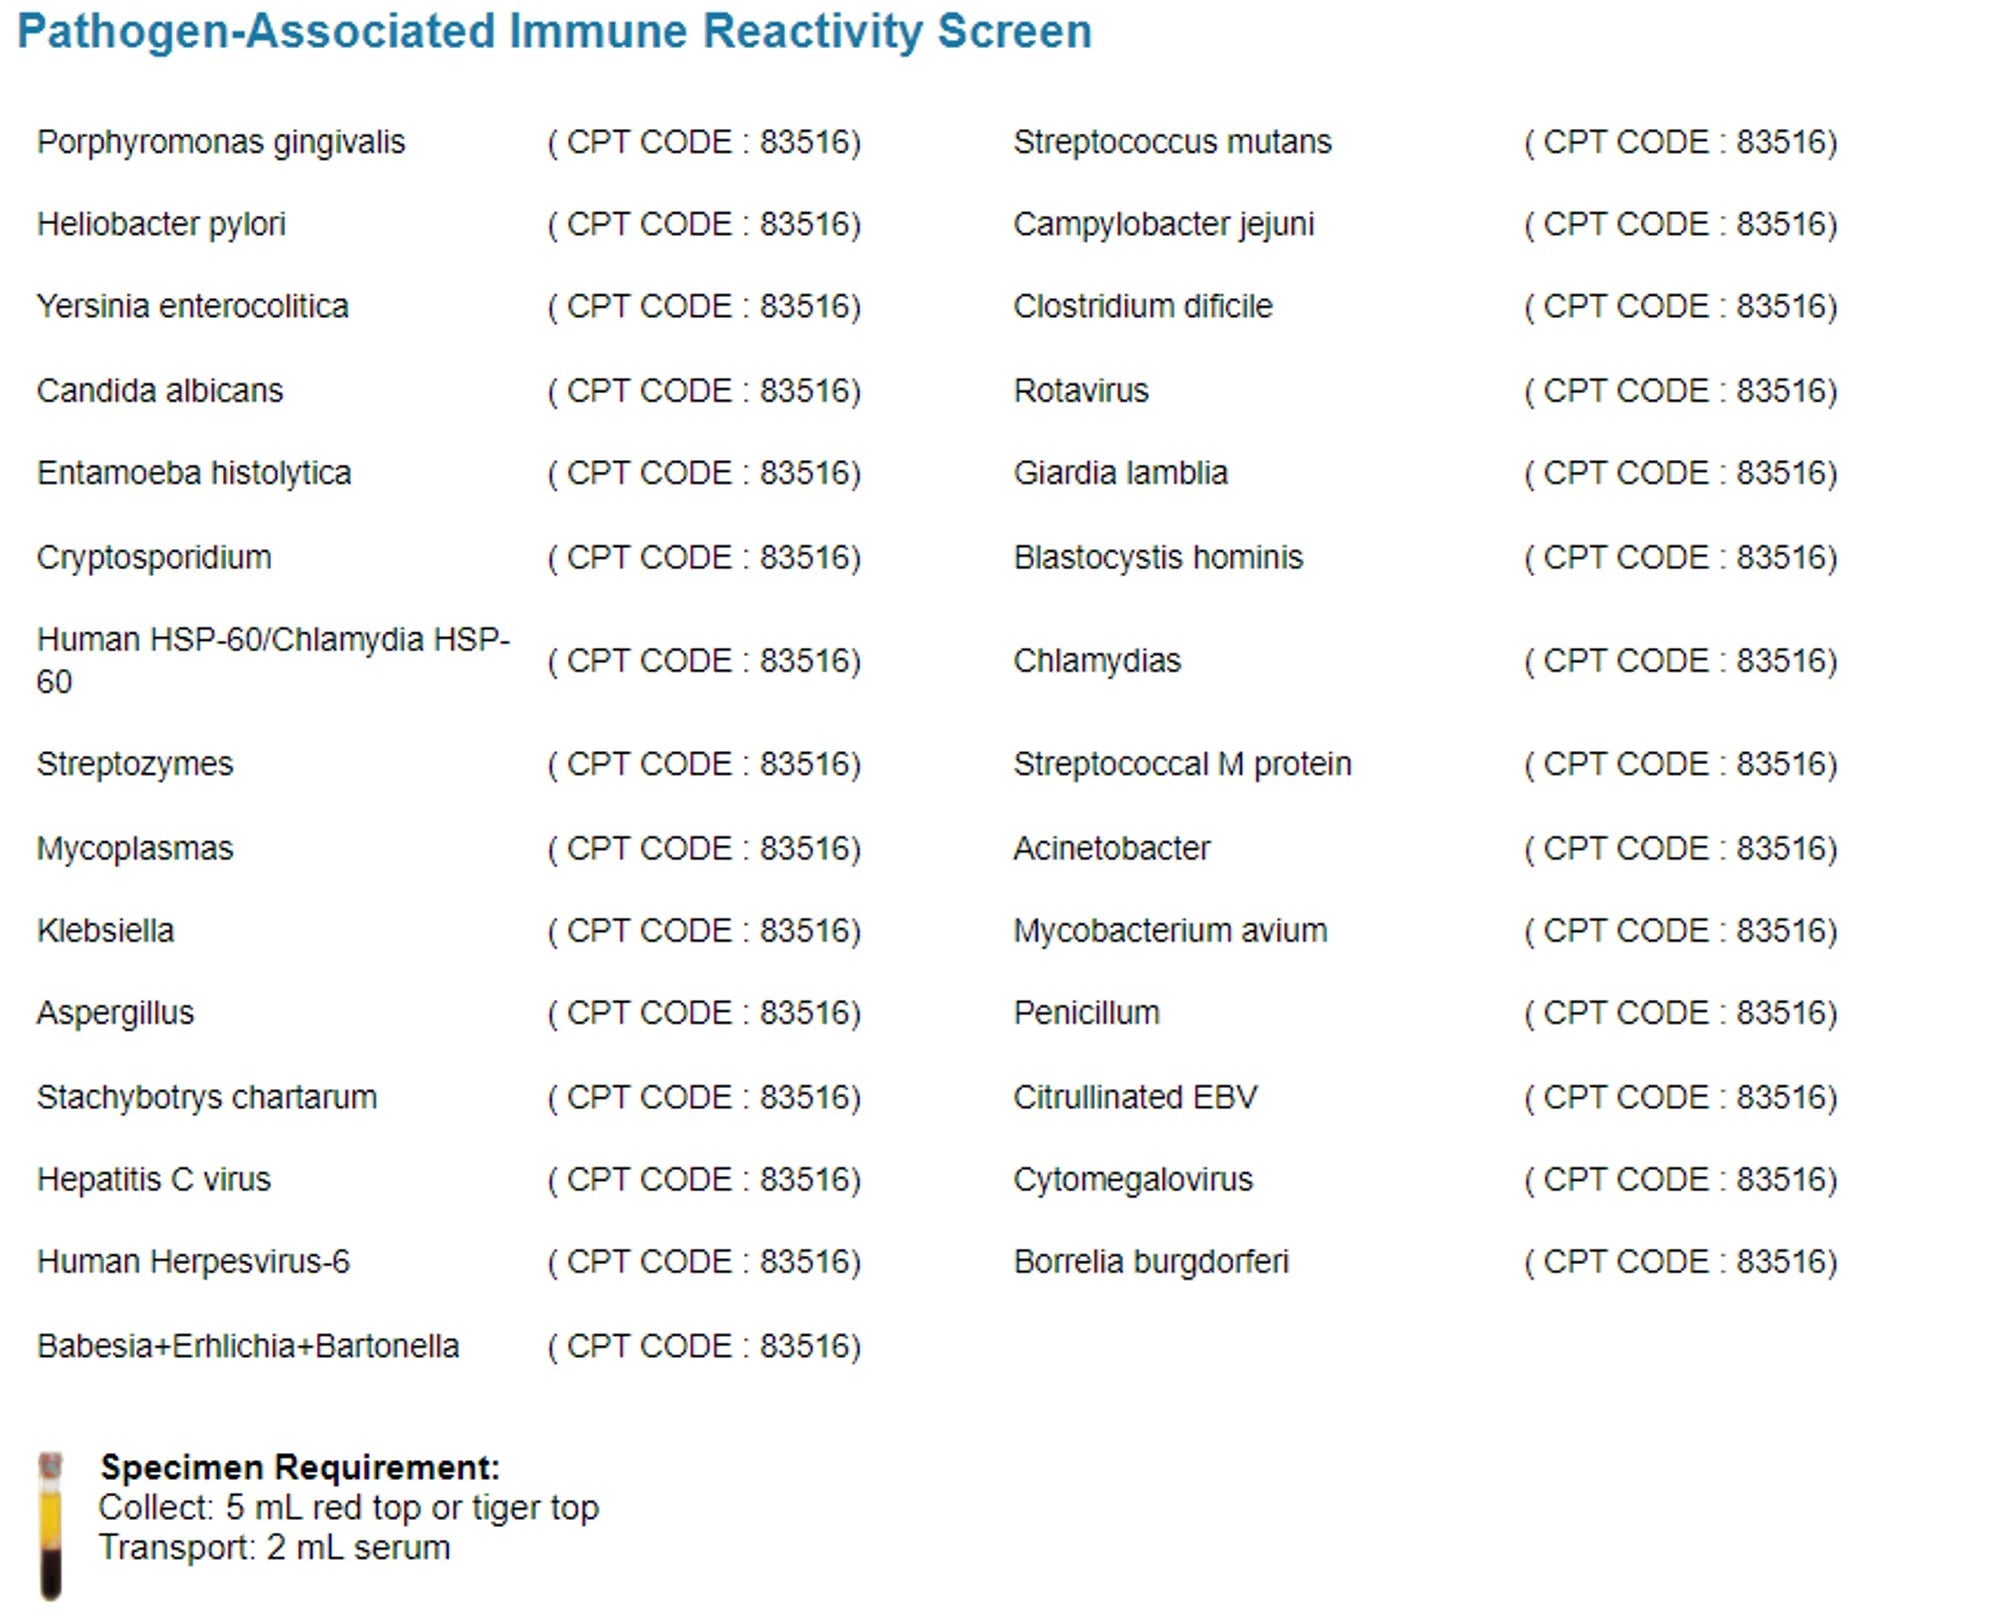 Cyrex ARRAY 12 - Pathogen-Associated Immune Reactivity Screen Test iThrive Essentials